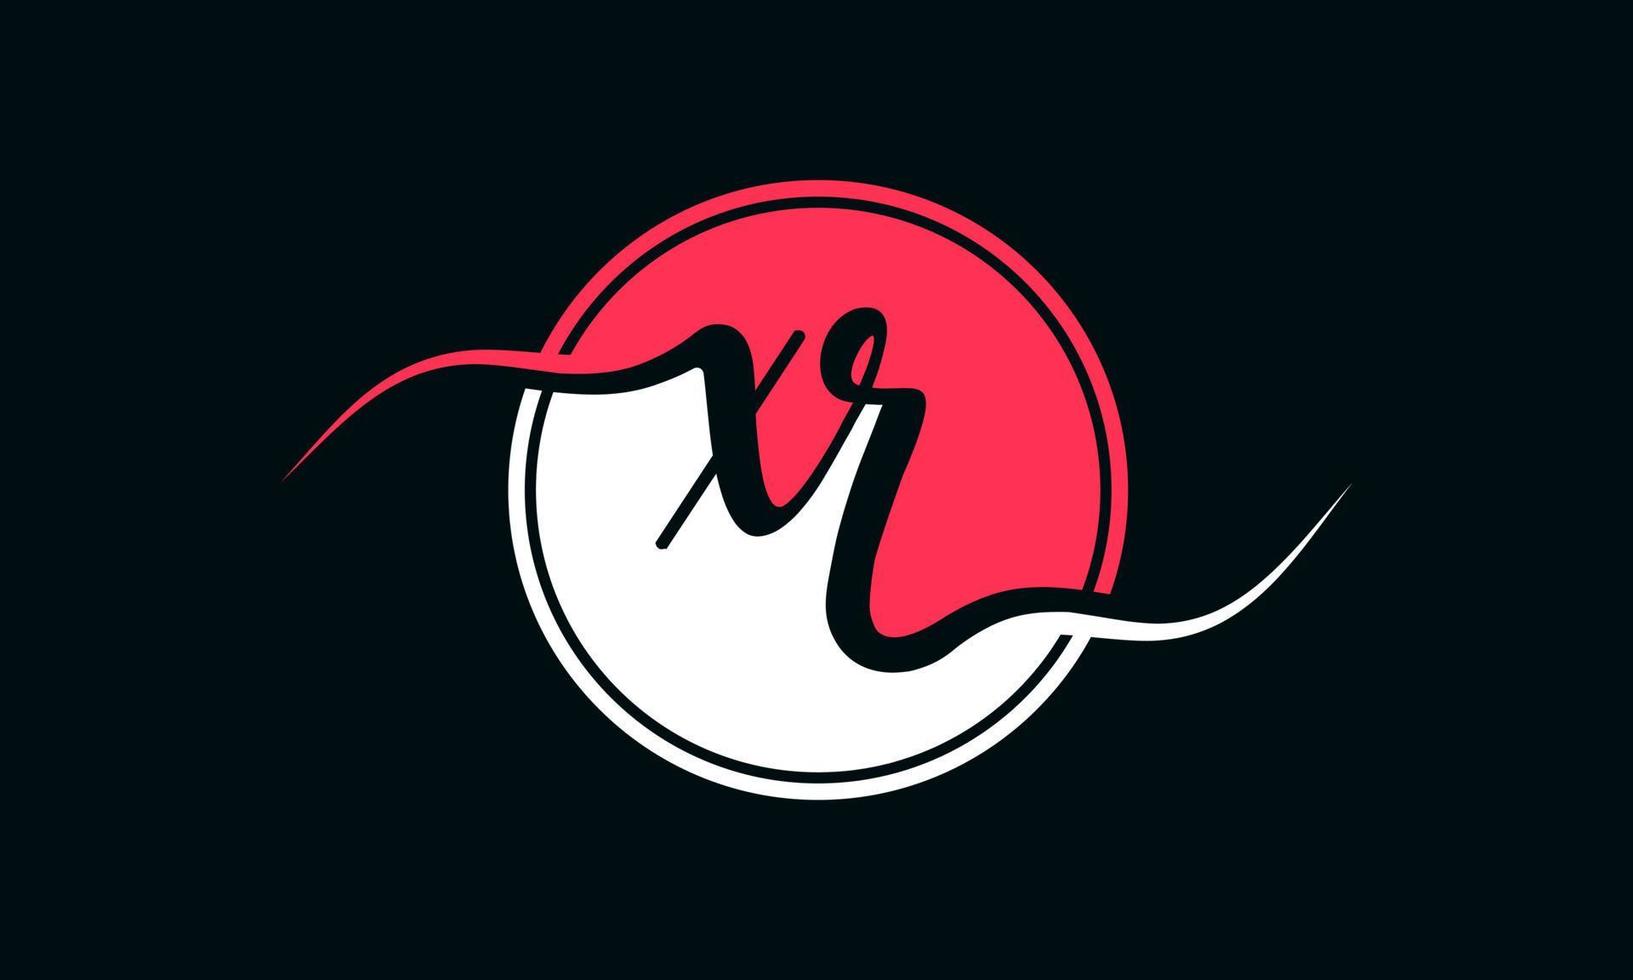 logotipo inicial da letra xr com círculo interno na cor branca e rosa. vetor profissional.